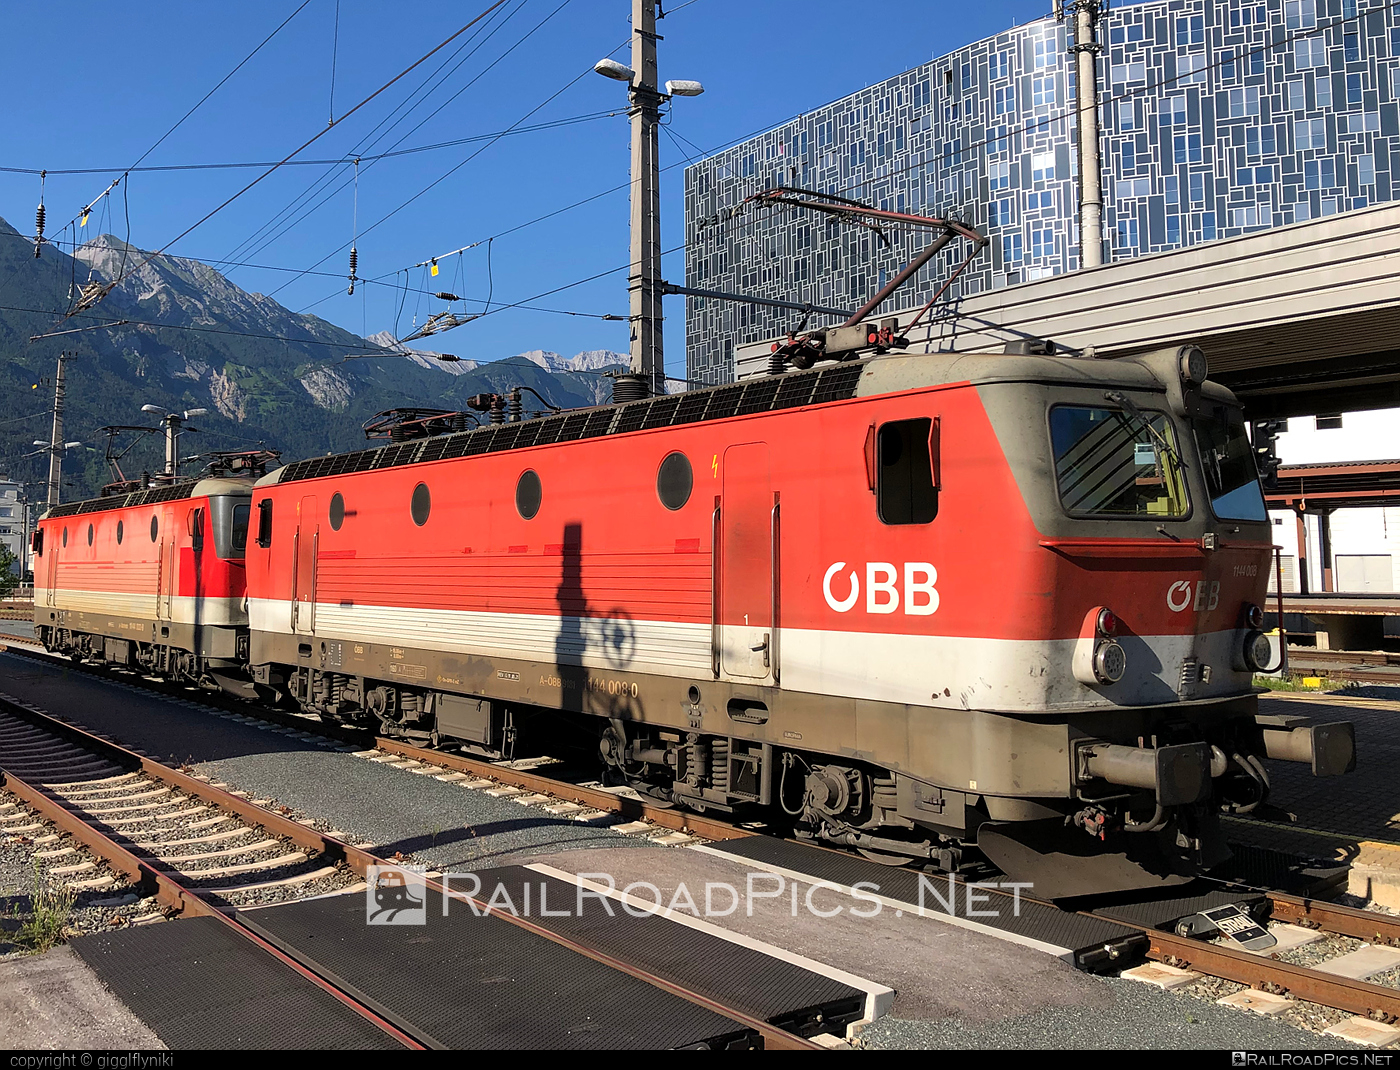 SGP ÖBB Class 1144 - 1144 008 operated by Österreichische Bundesbahnen #obb #obbclass1144 #osterreichischebundesbahnen #sgp #sgp1144 #simmeringgrazpauker